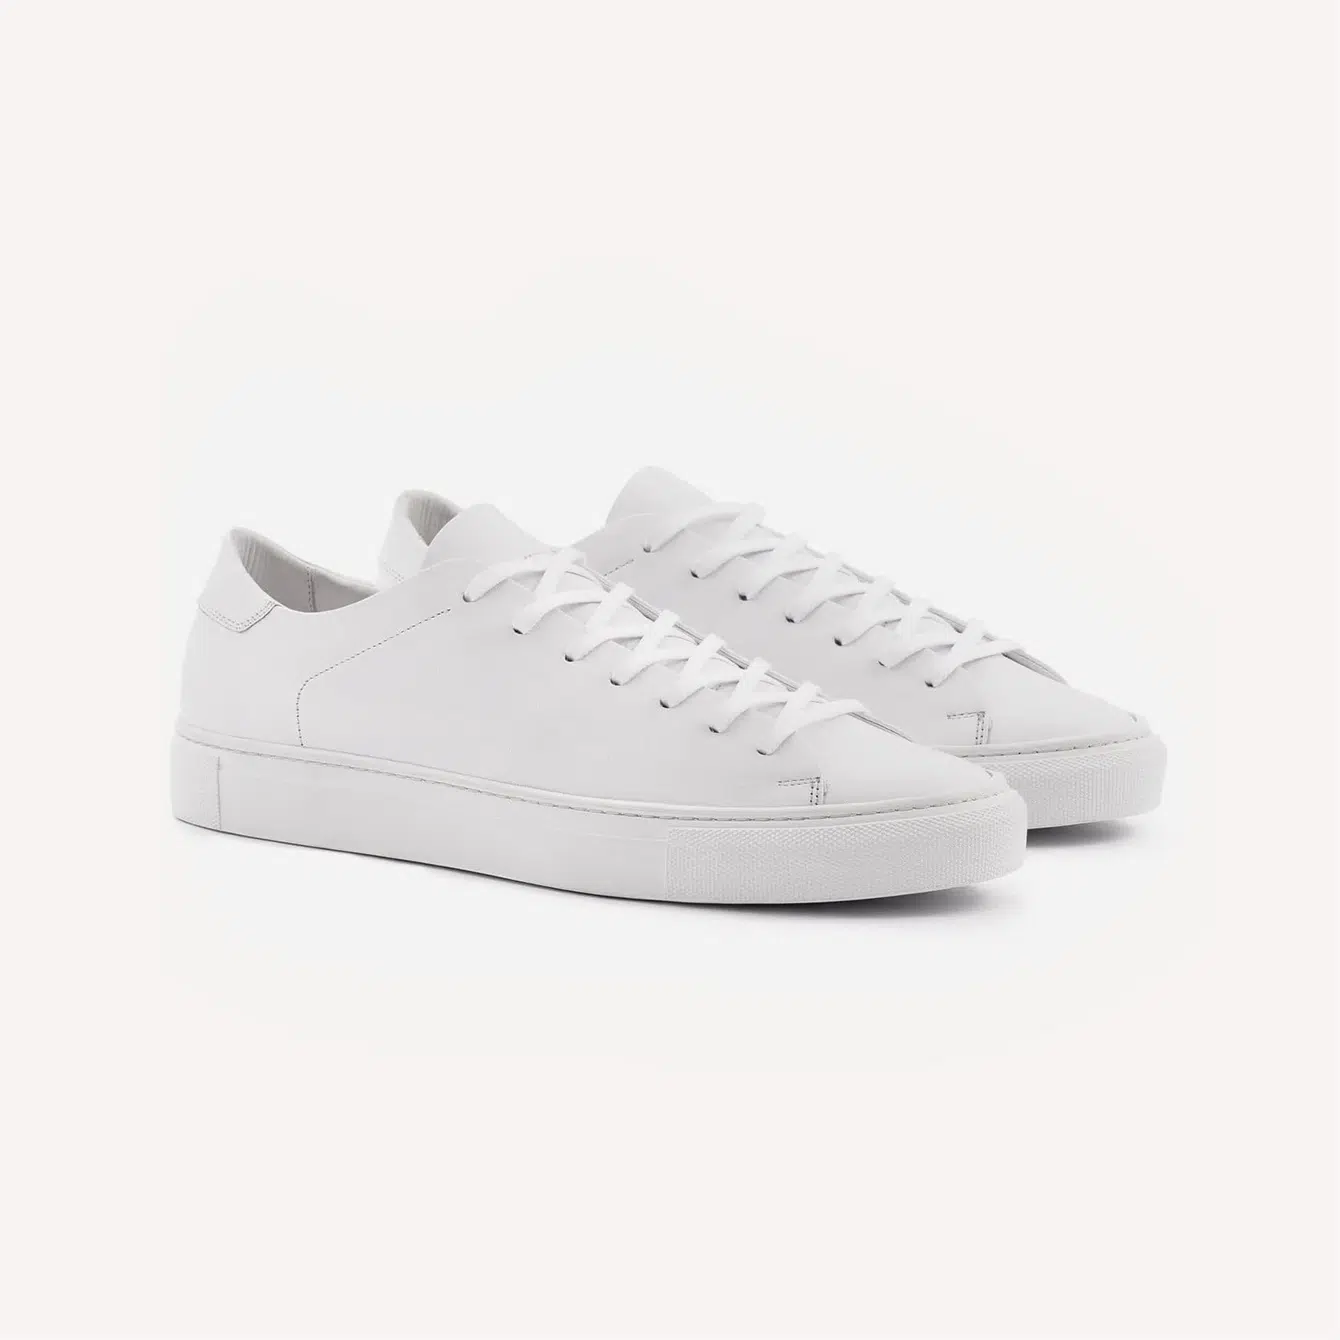 Beckett Simonon Reid Sneakers White